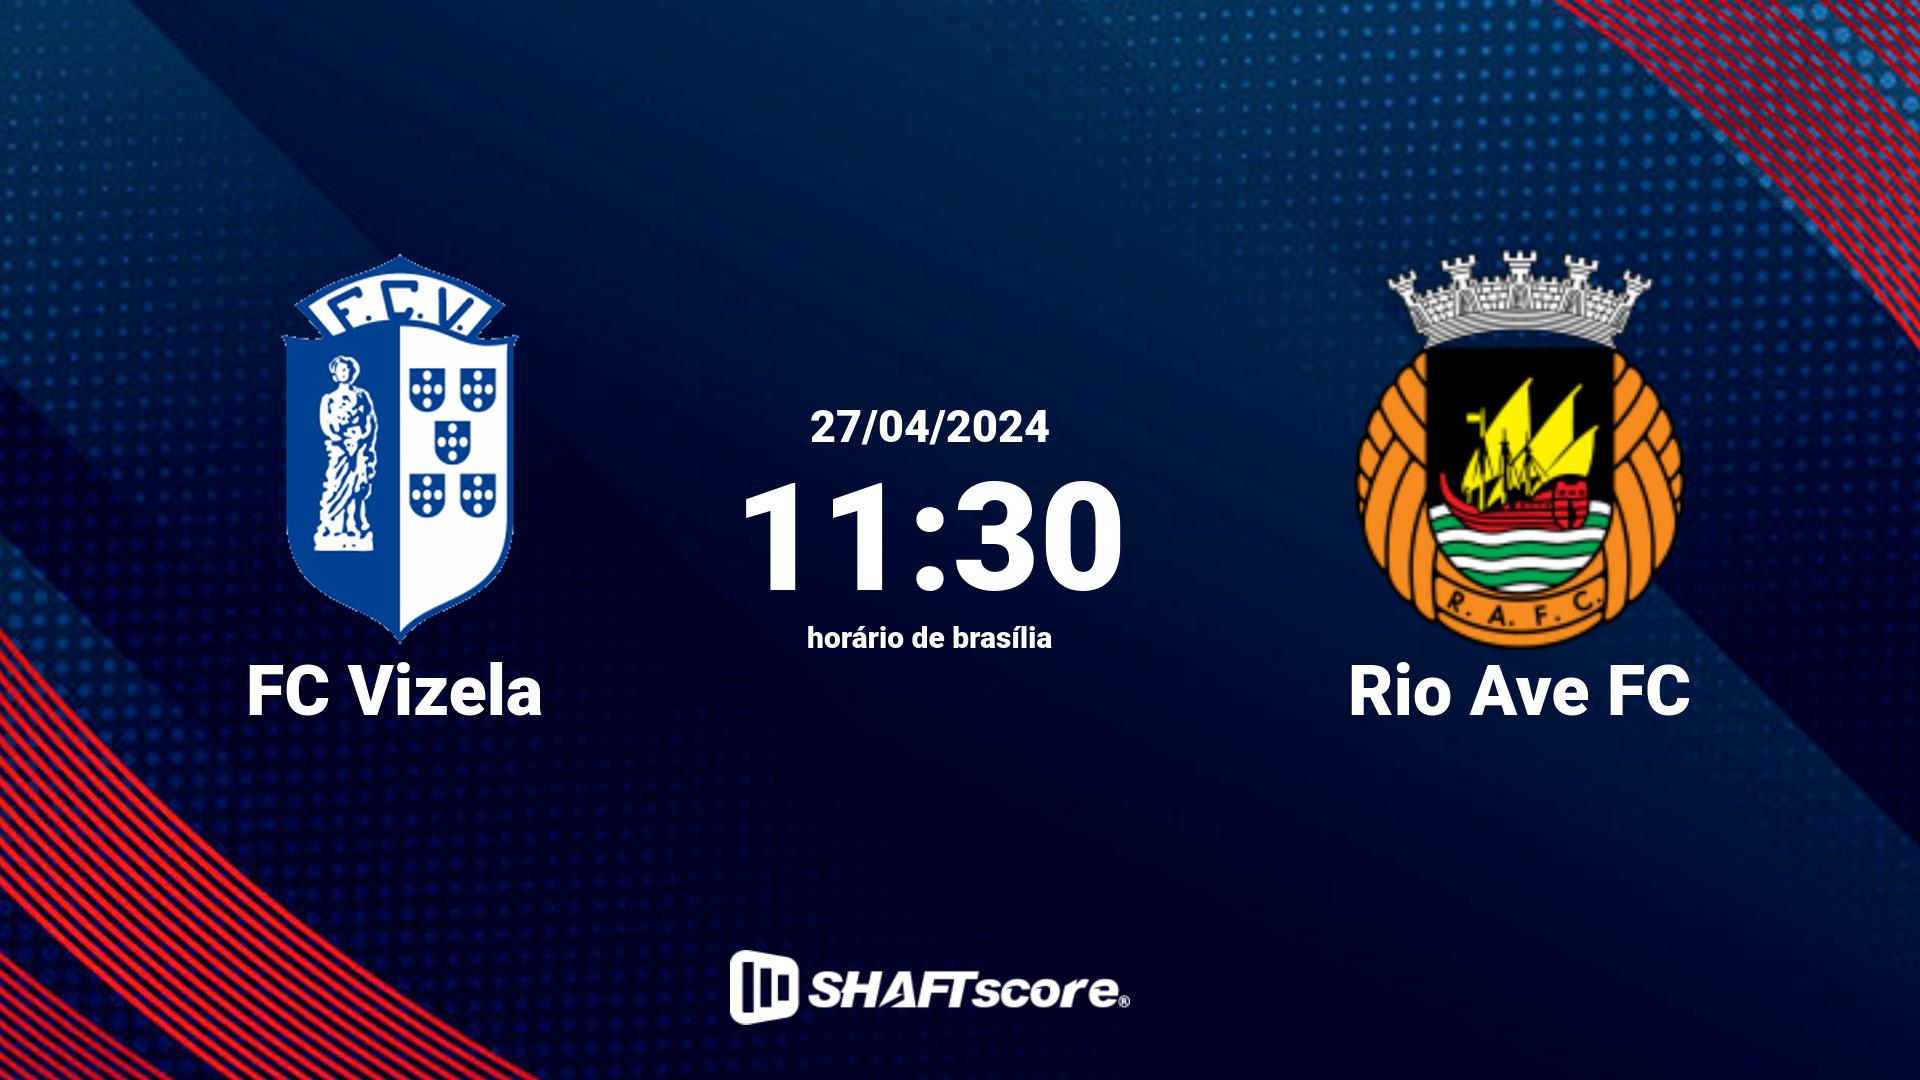 Estatísticas do jogo FC Vizela vs Rio Ave FC 27.04 11:30